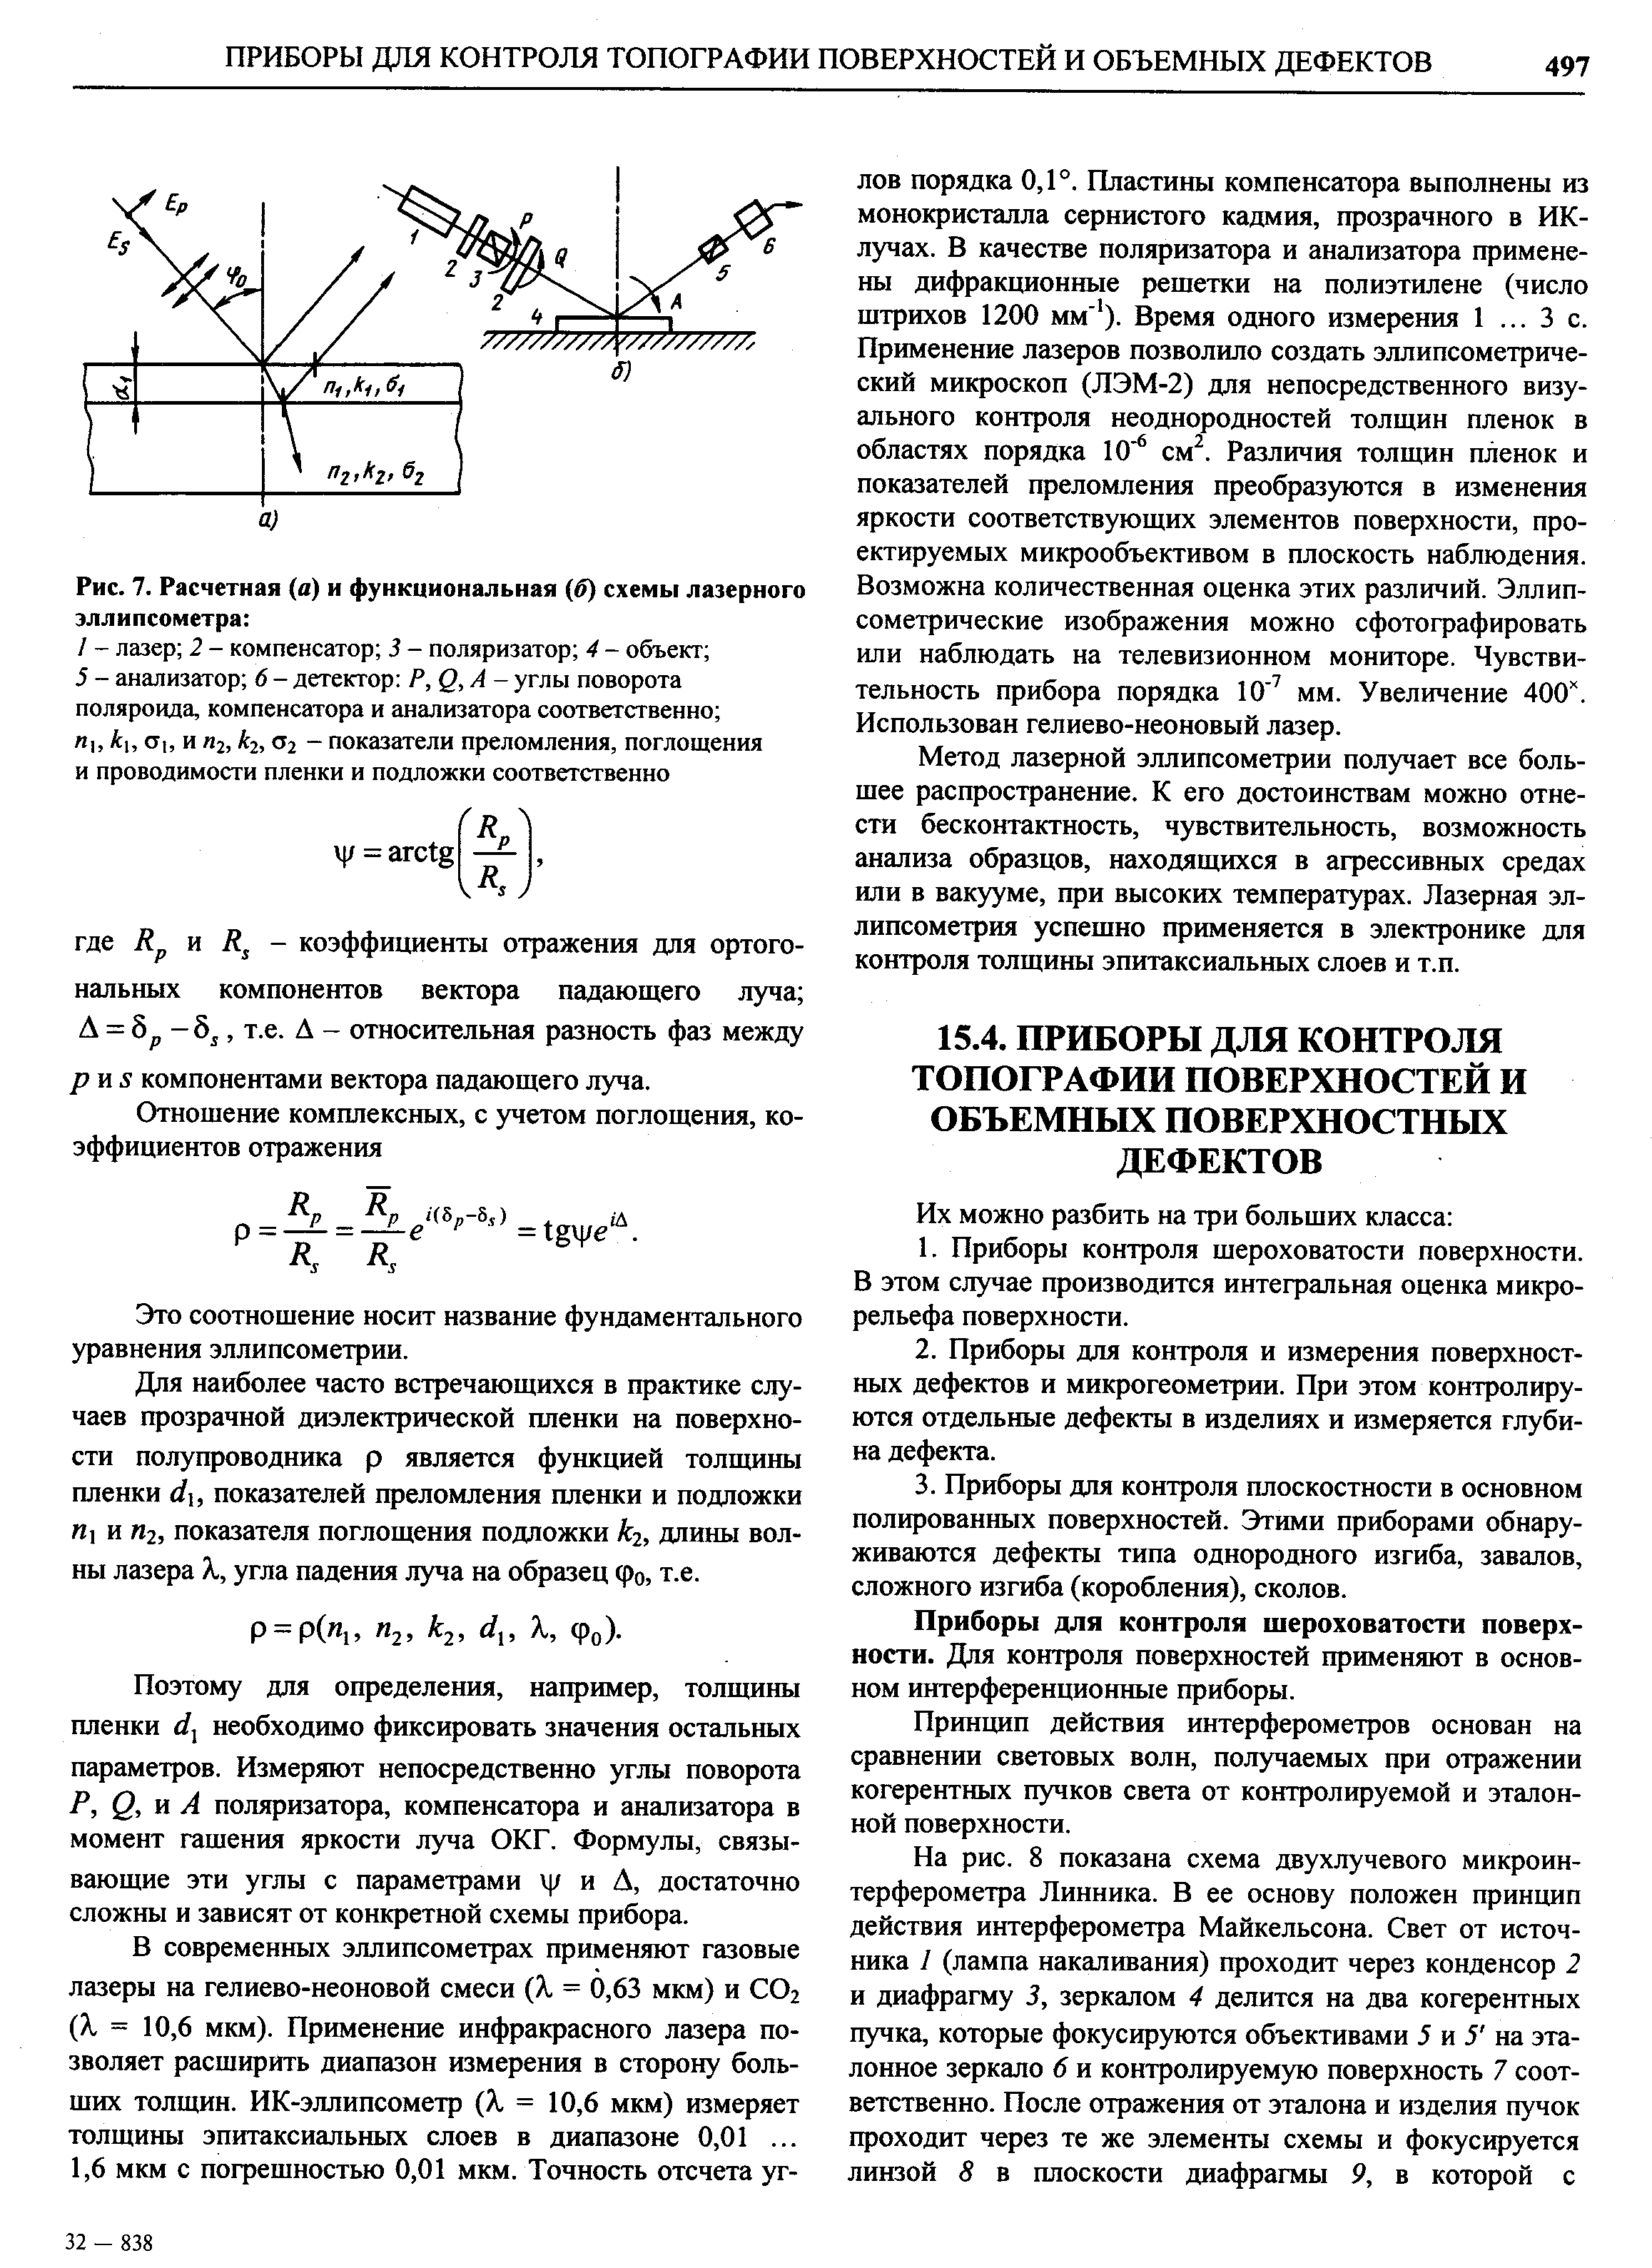 Рис. 7. Расчетная (а) и функциональная (б) схемы лазерного эллипсометра 
